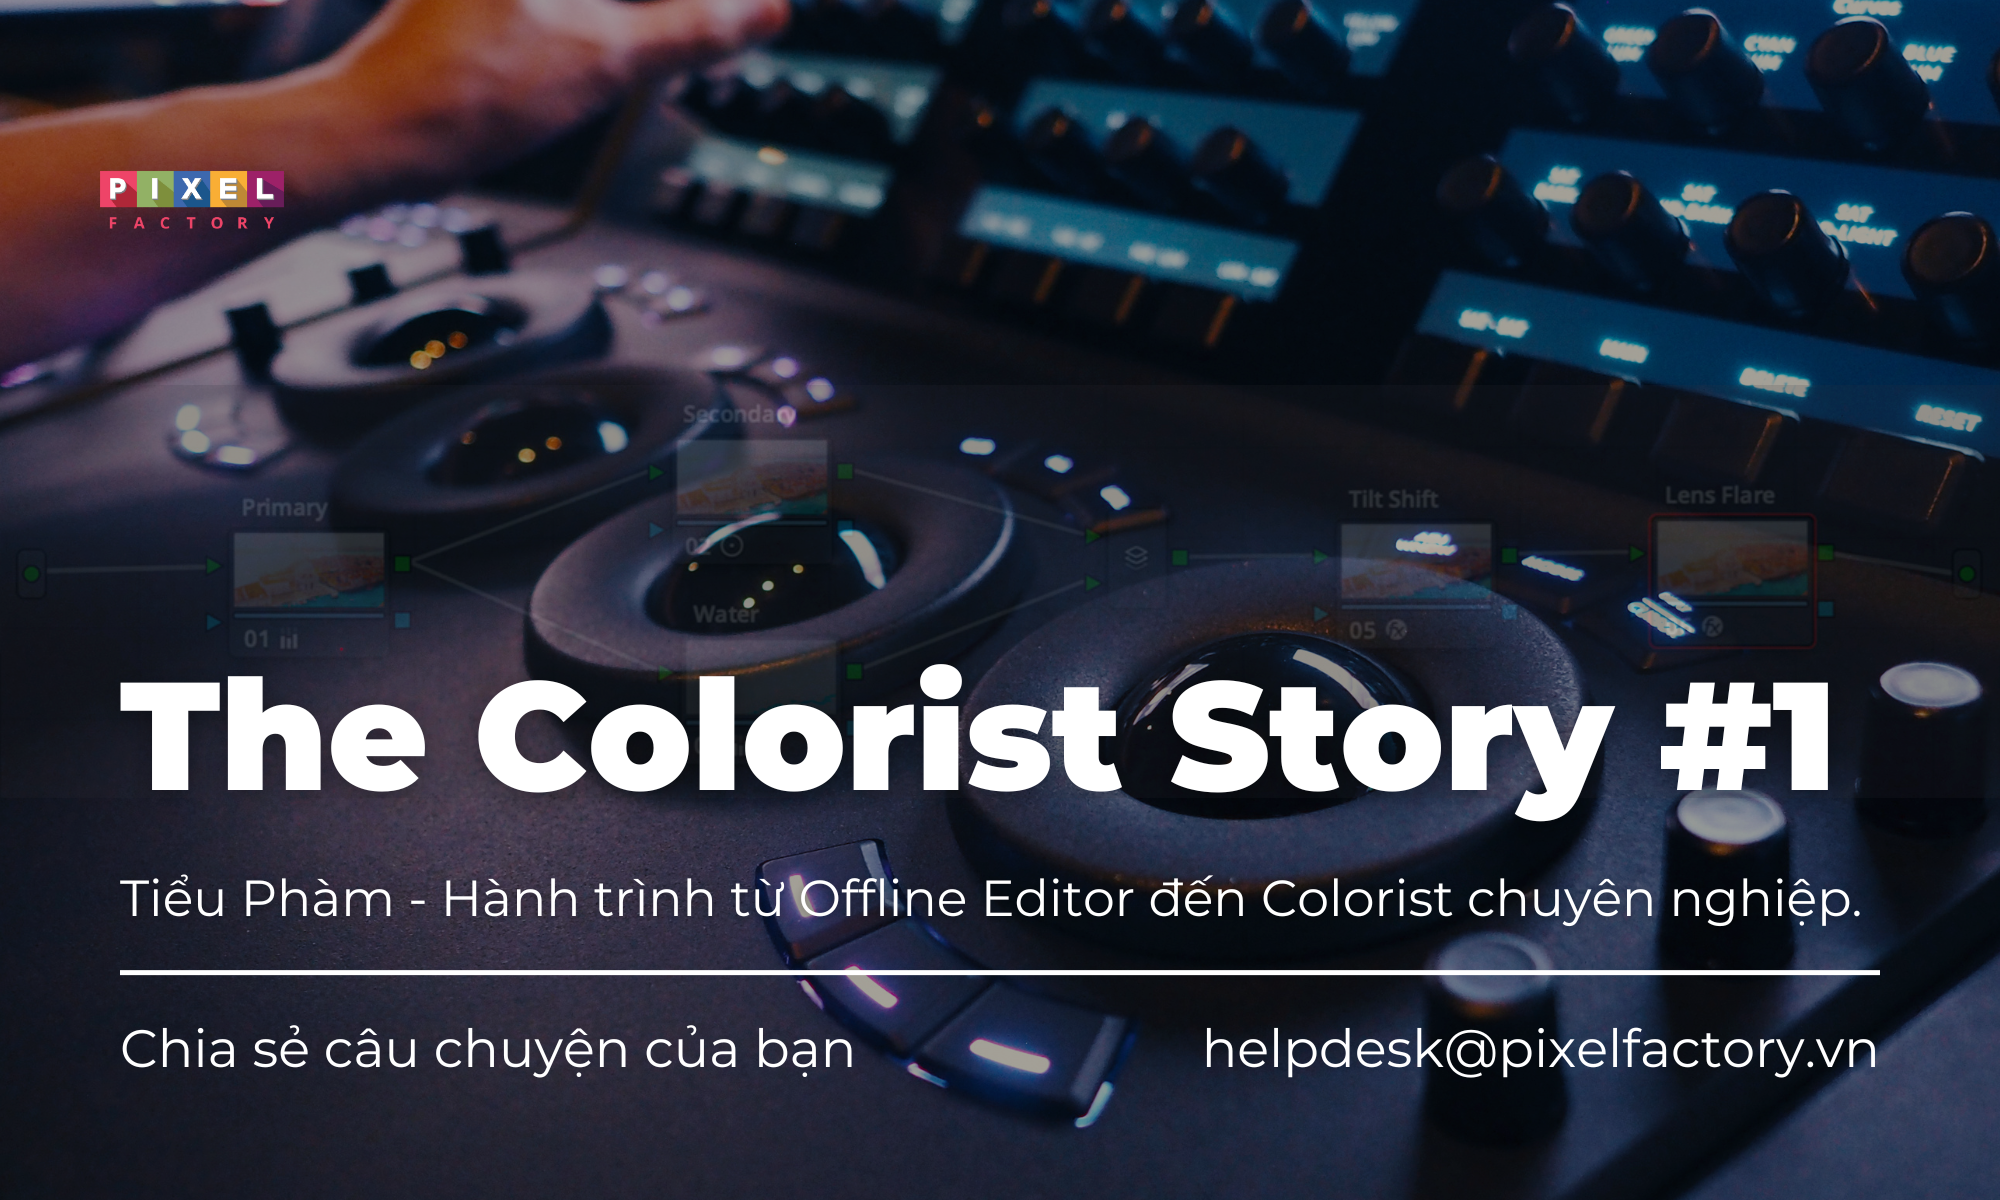 The Colorist Story #1: Câu chuyện của Tiểu Phàm - Hành trình từ Offline Editor đến Colorist chuyên nghiệp.